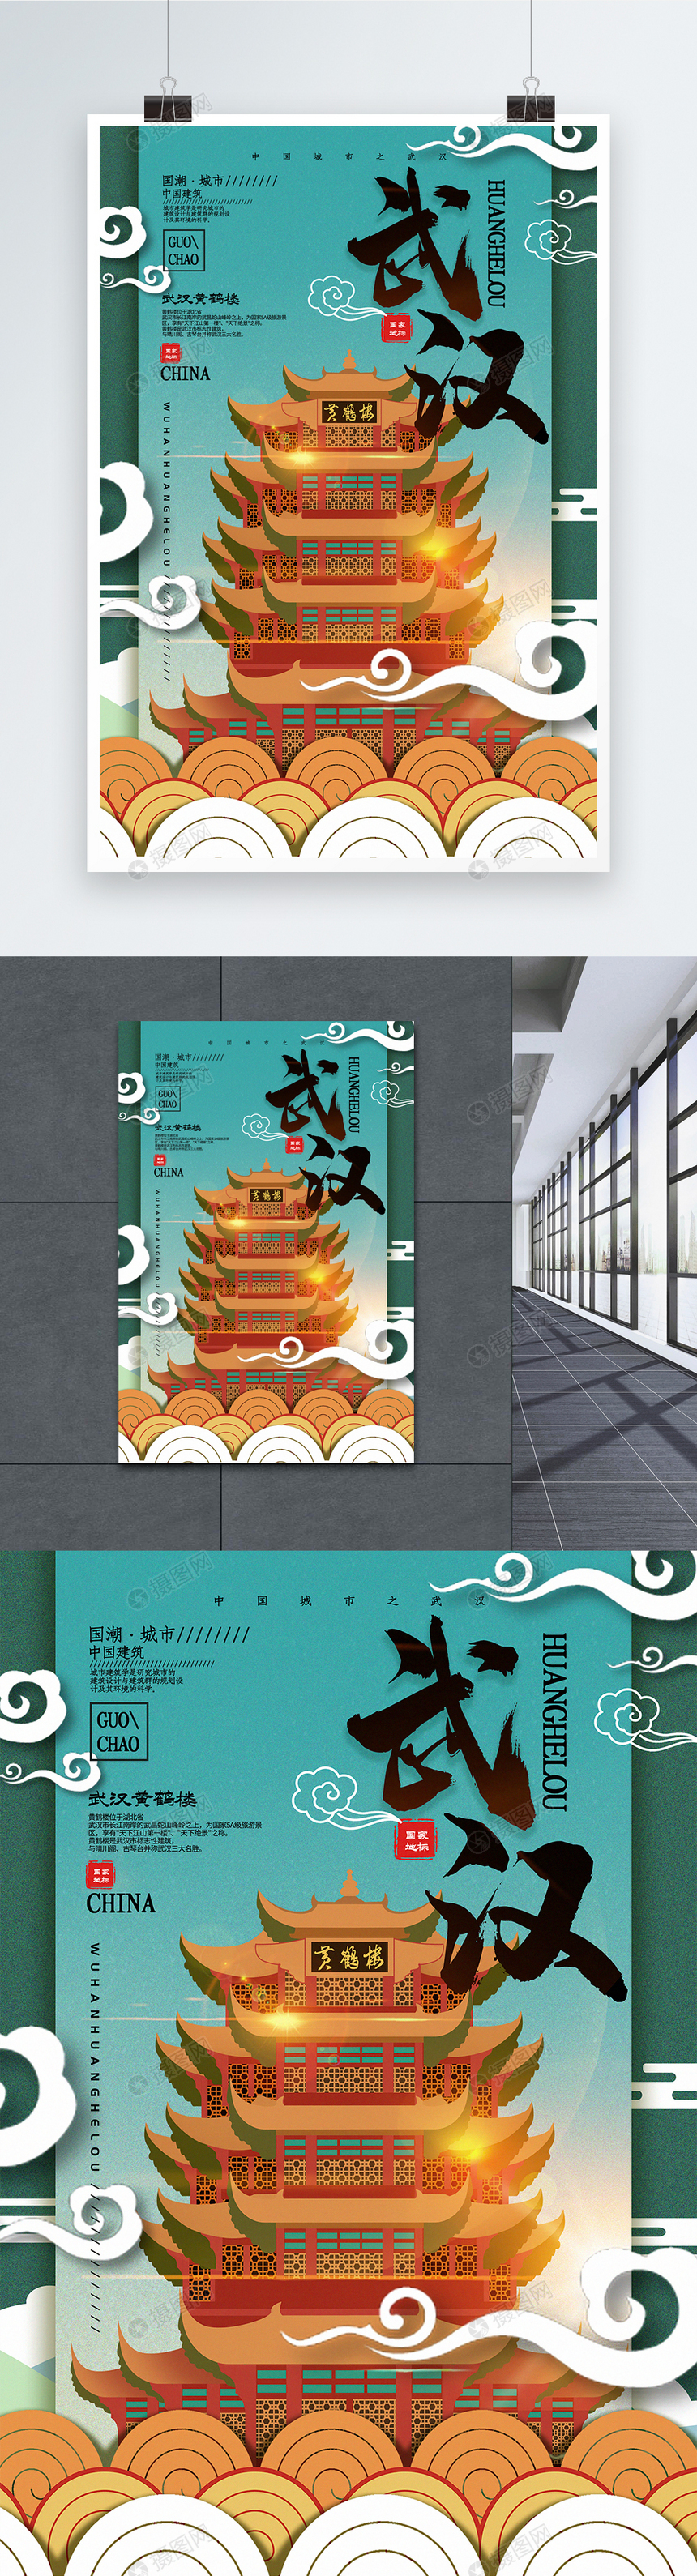 中国风城市武汉中国城市地标系列宣传海报图片